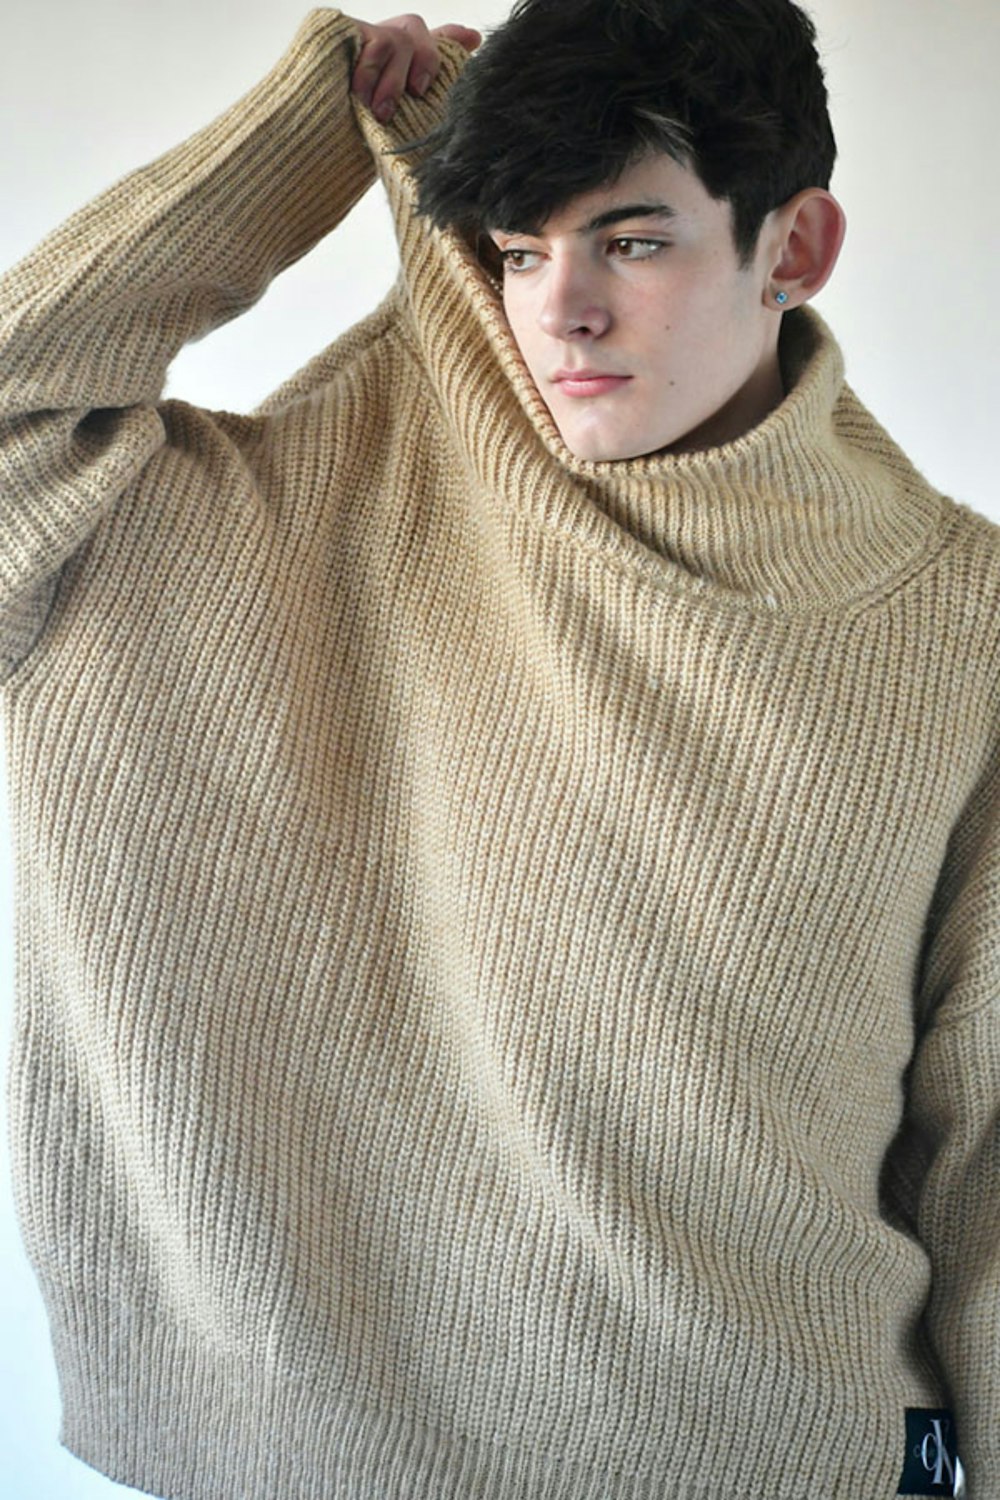 タートルネックのセーターを着た若い男